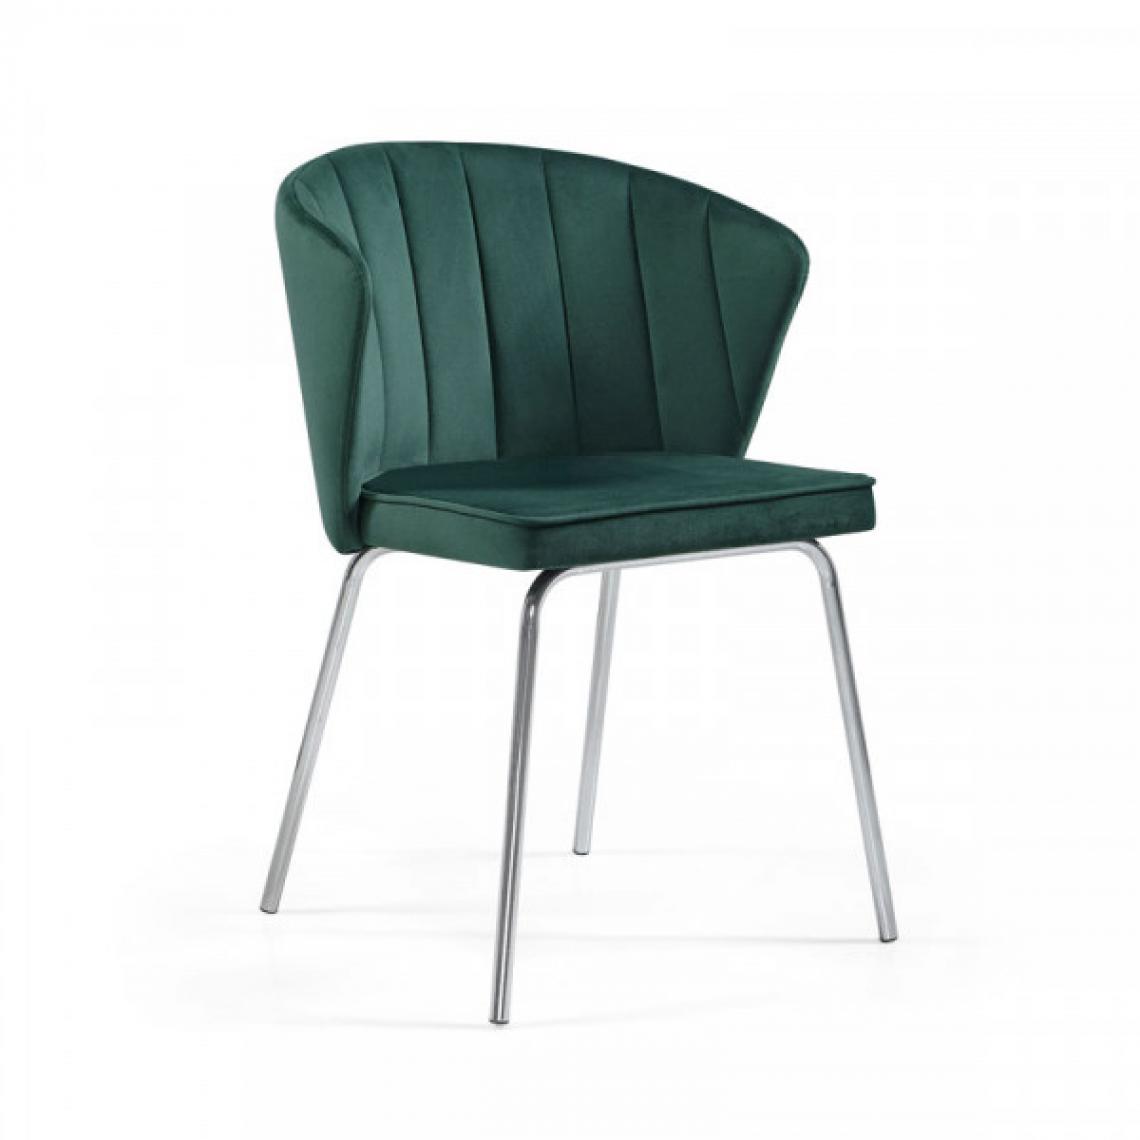 Dansmamaison - Chaise en tissu velours Vert - EDEN - L 56 x l 50 x H 78 cm - Chaises